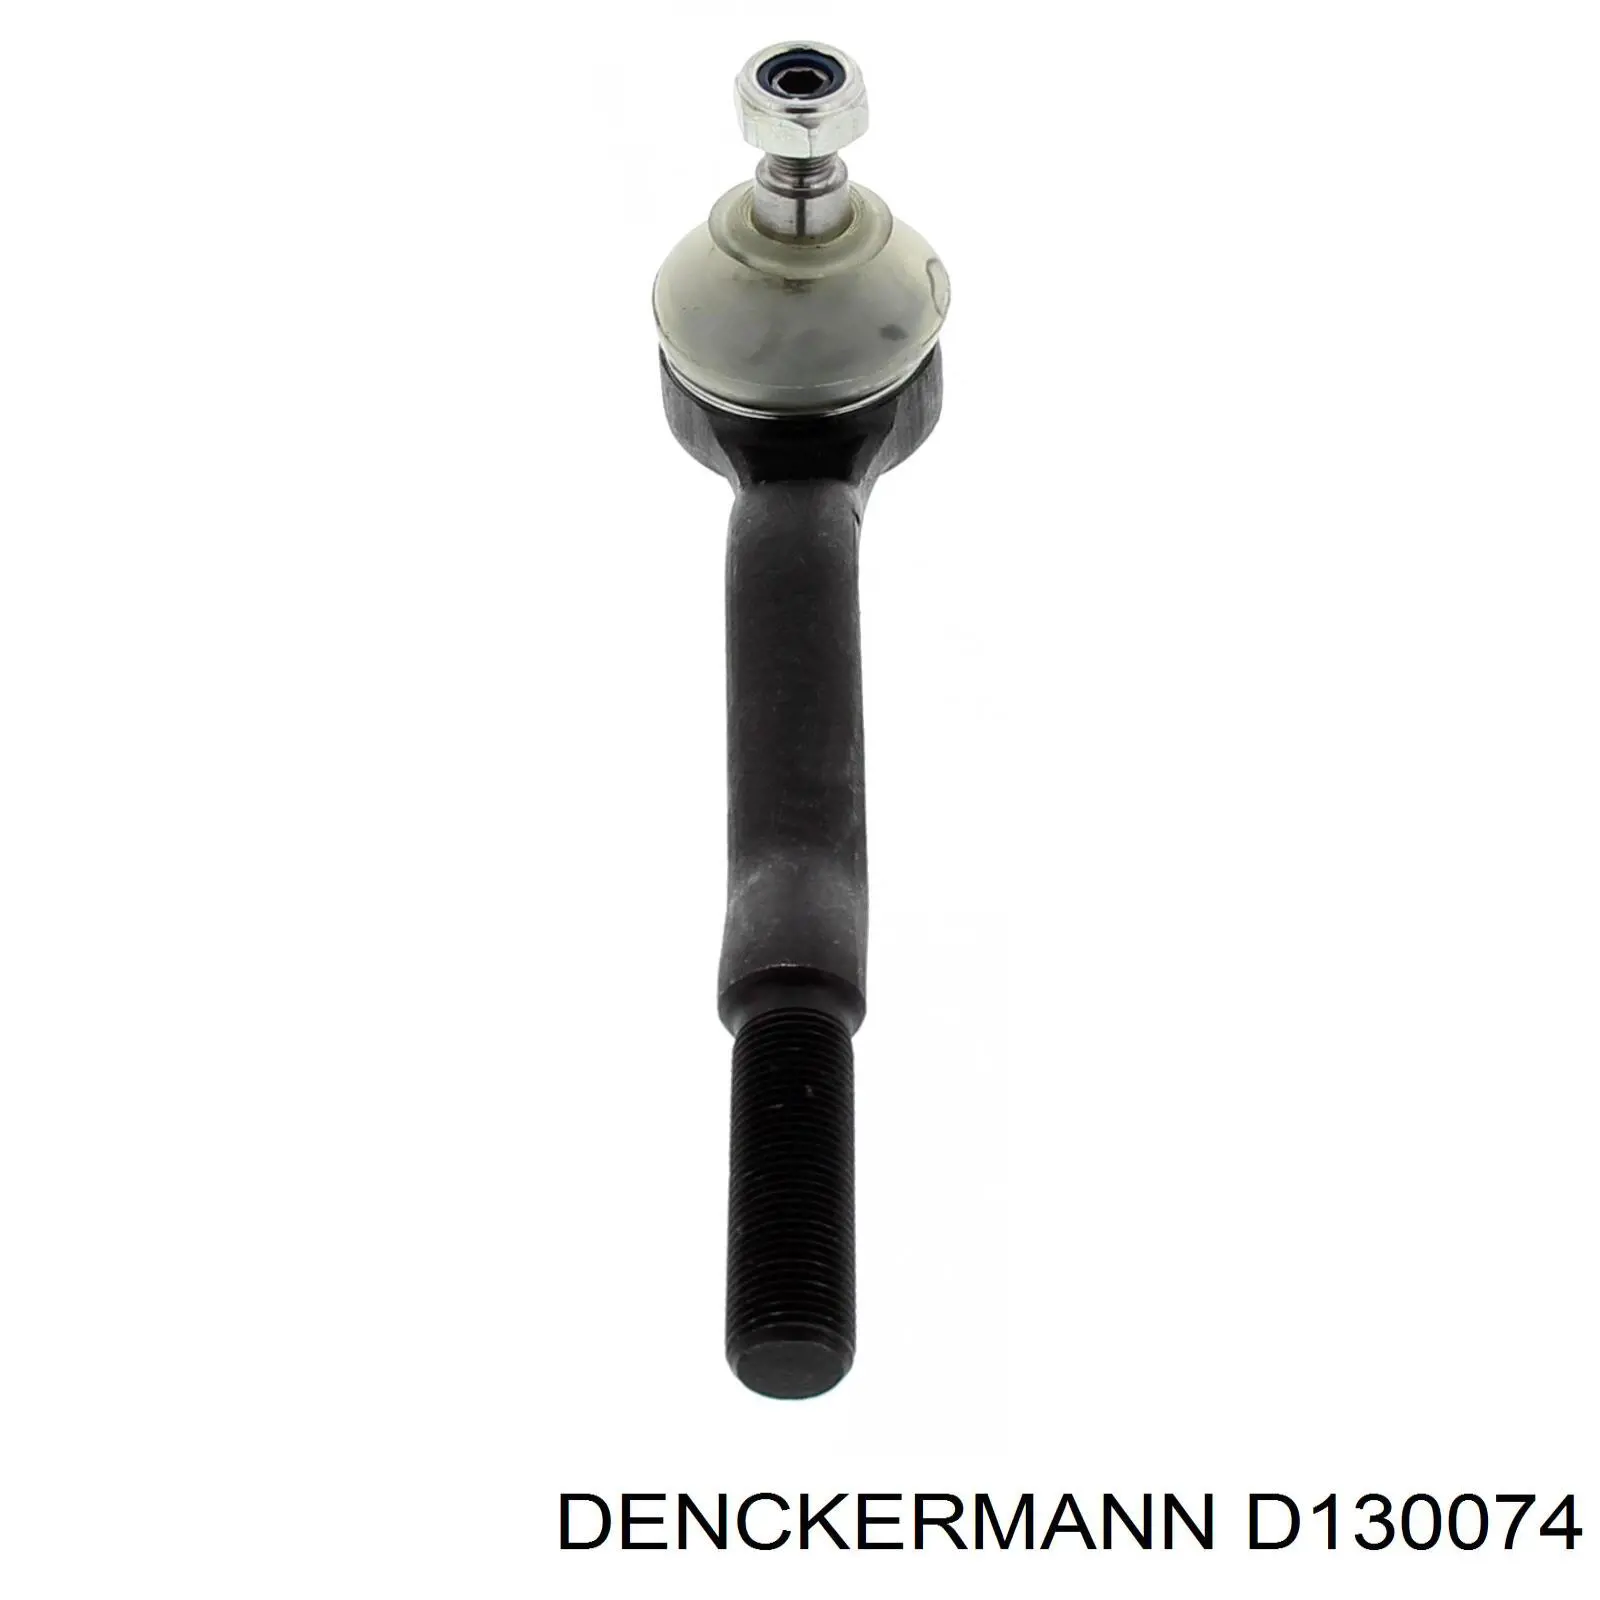 D130074 Denckermann rótula barra de acoplamiento exterior